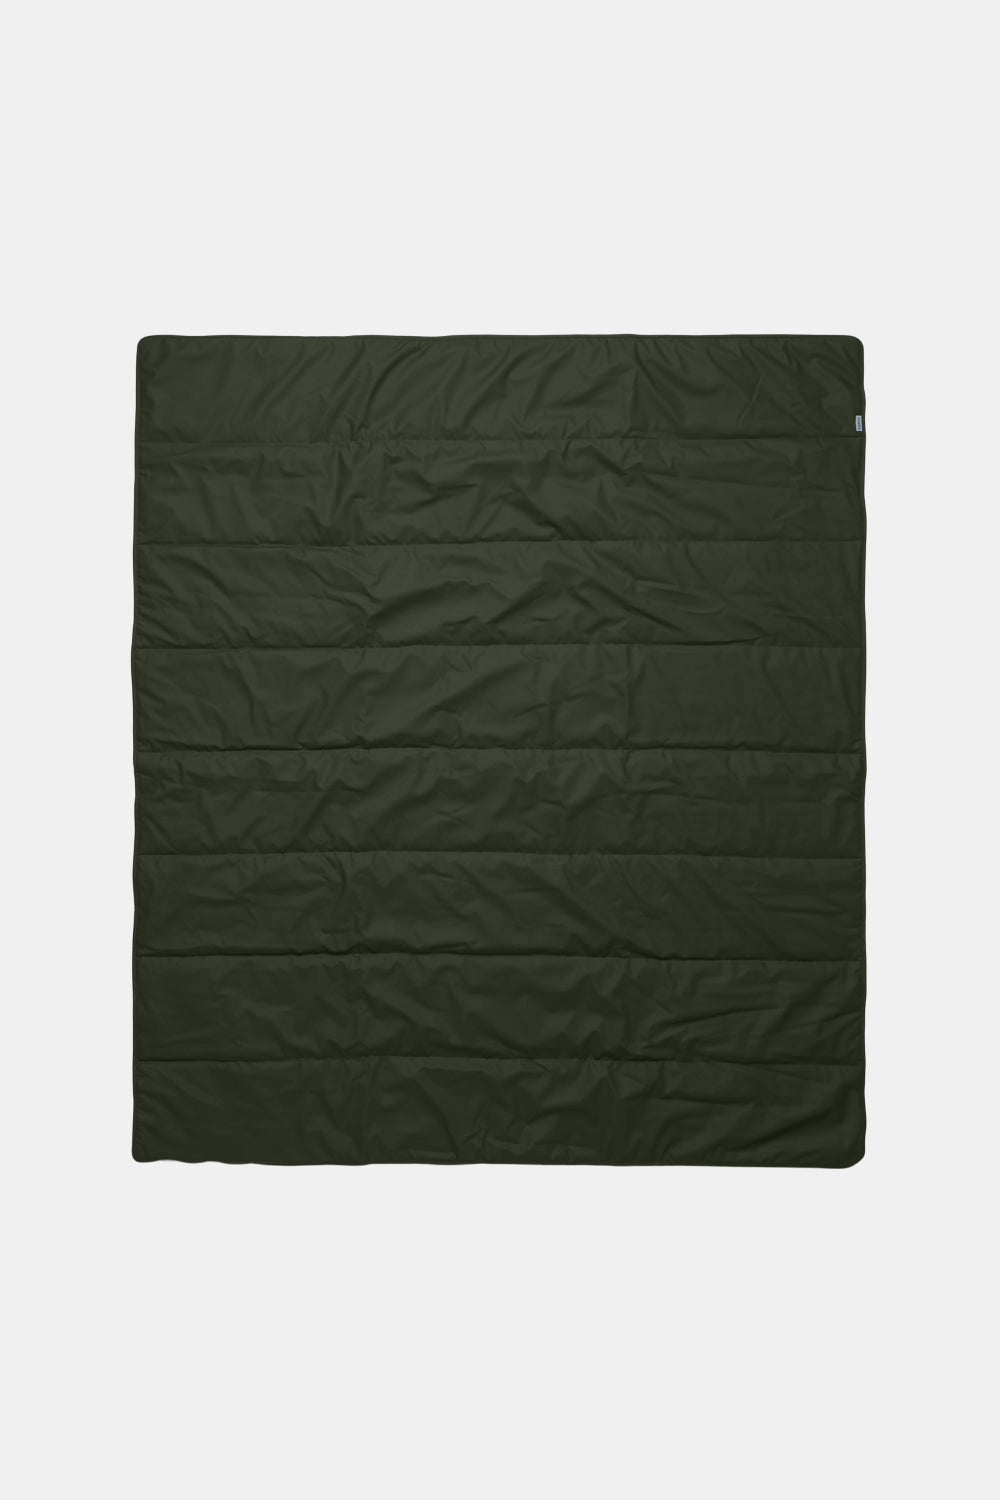 Rains Waterproof Quilted Packable Blanket (Green)